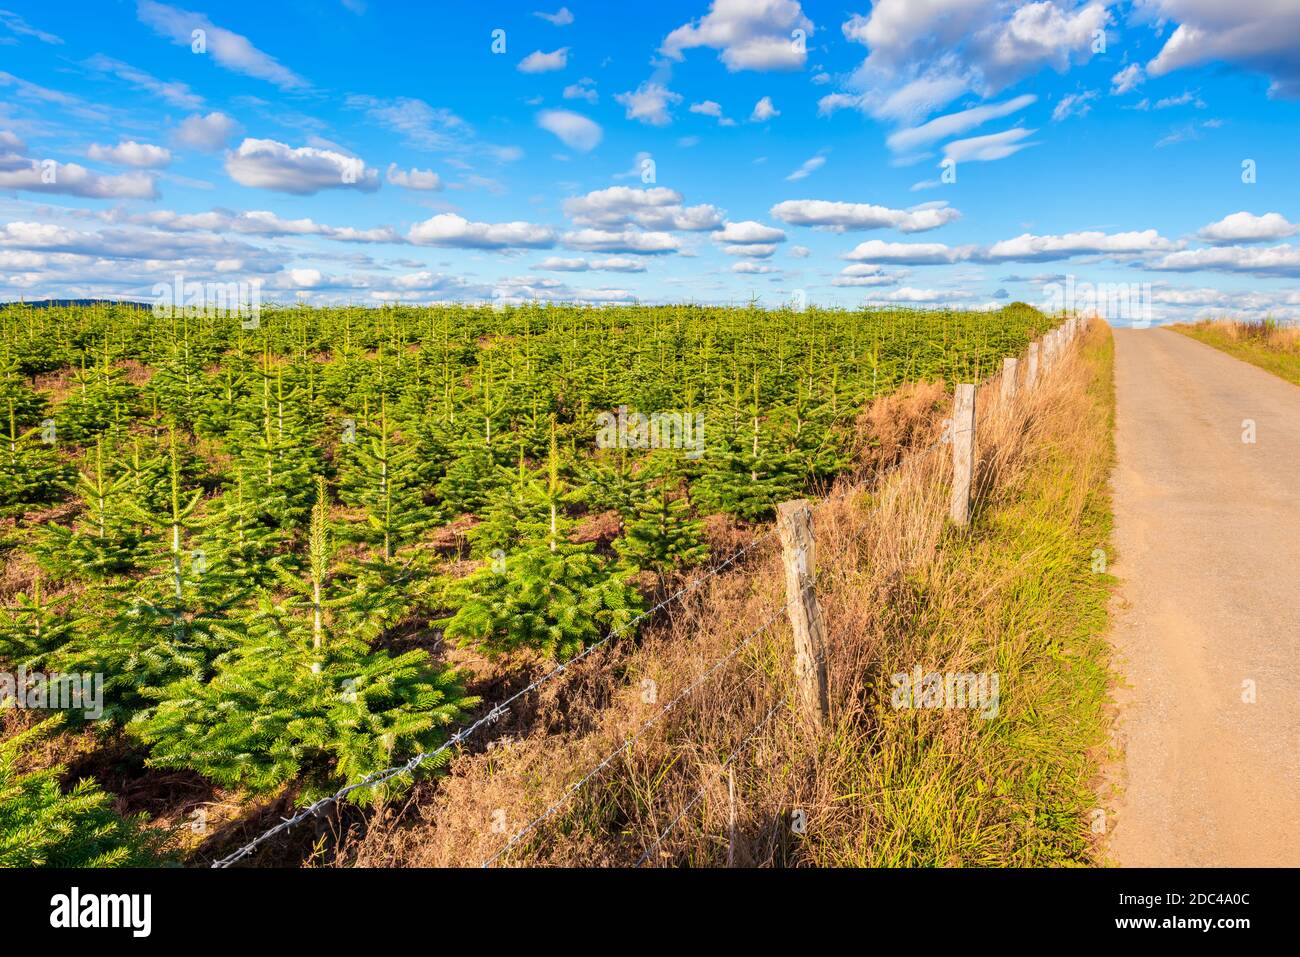 Plantation de jeunes sapins verts de Noël le long d'une route dans la région des Ardennes en Belgique. Capturé le jour d'été en septembre. Banque D'Images